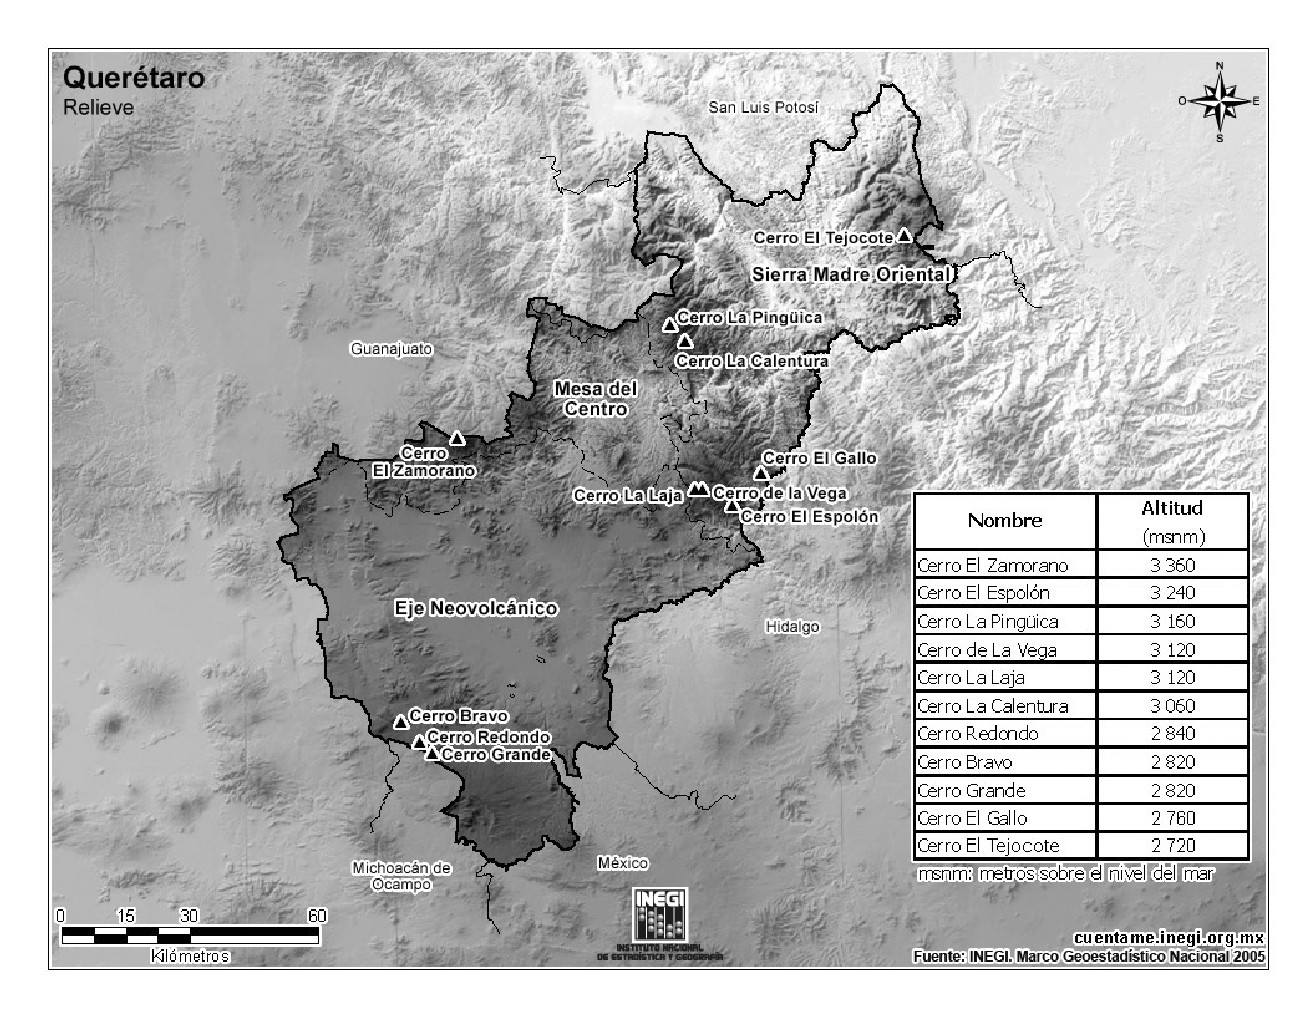 Mapa de montañas de Querétaro. INEGI de México